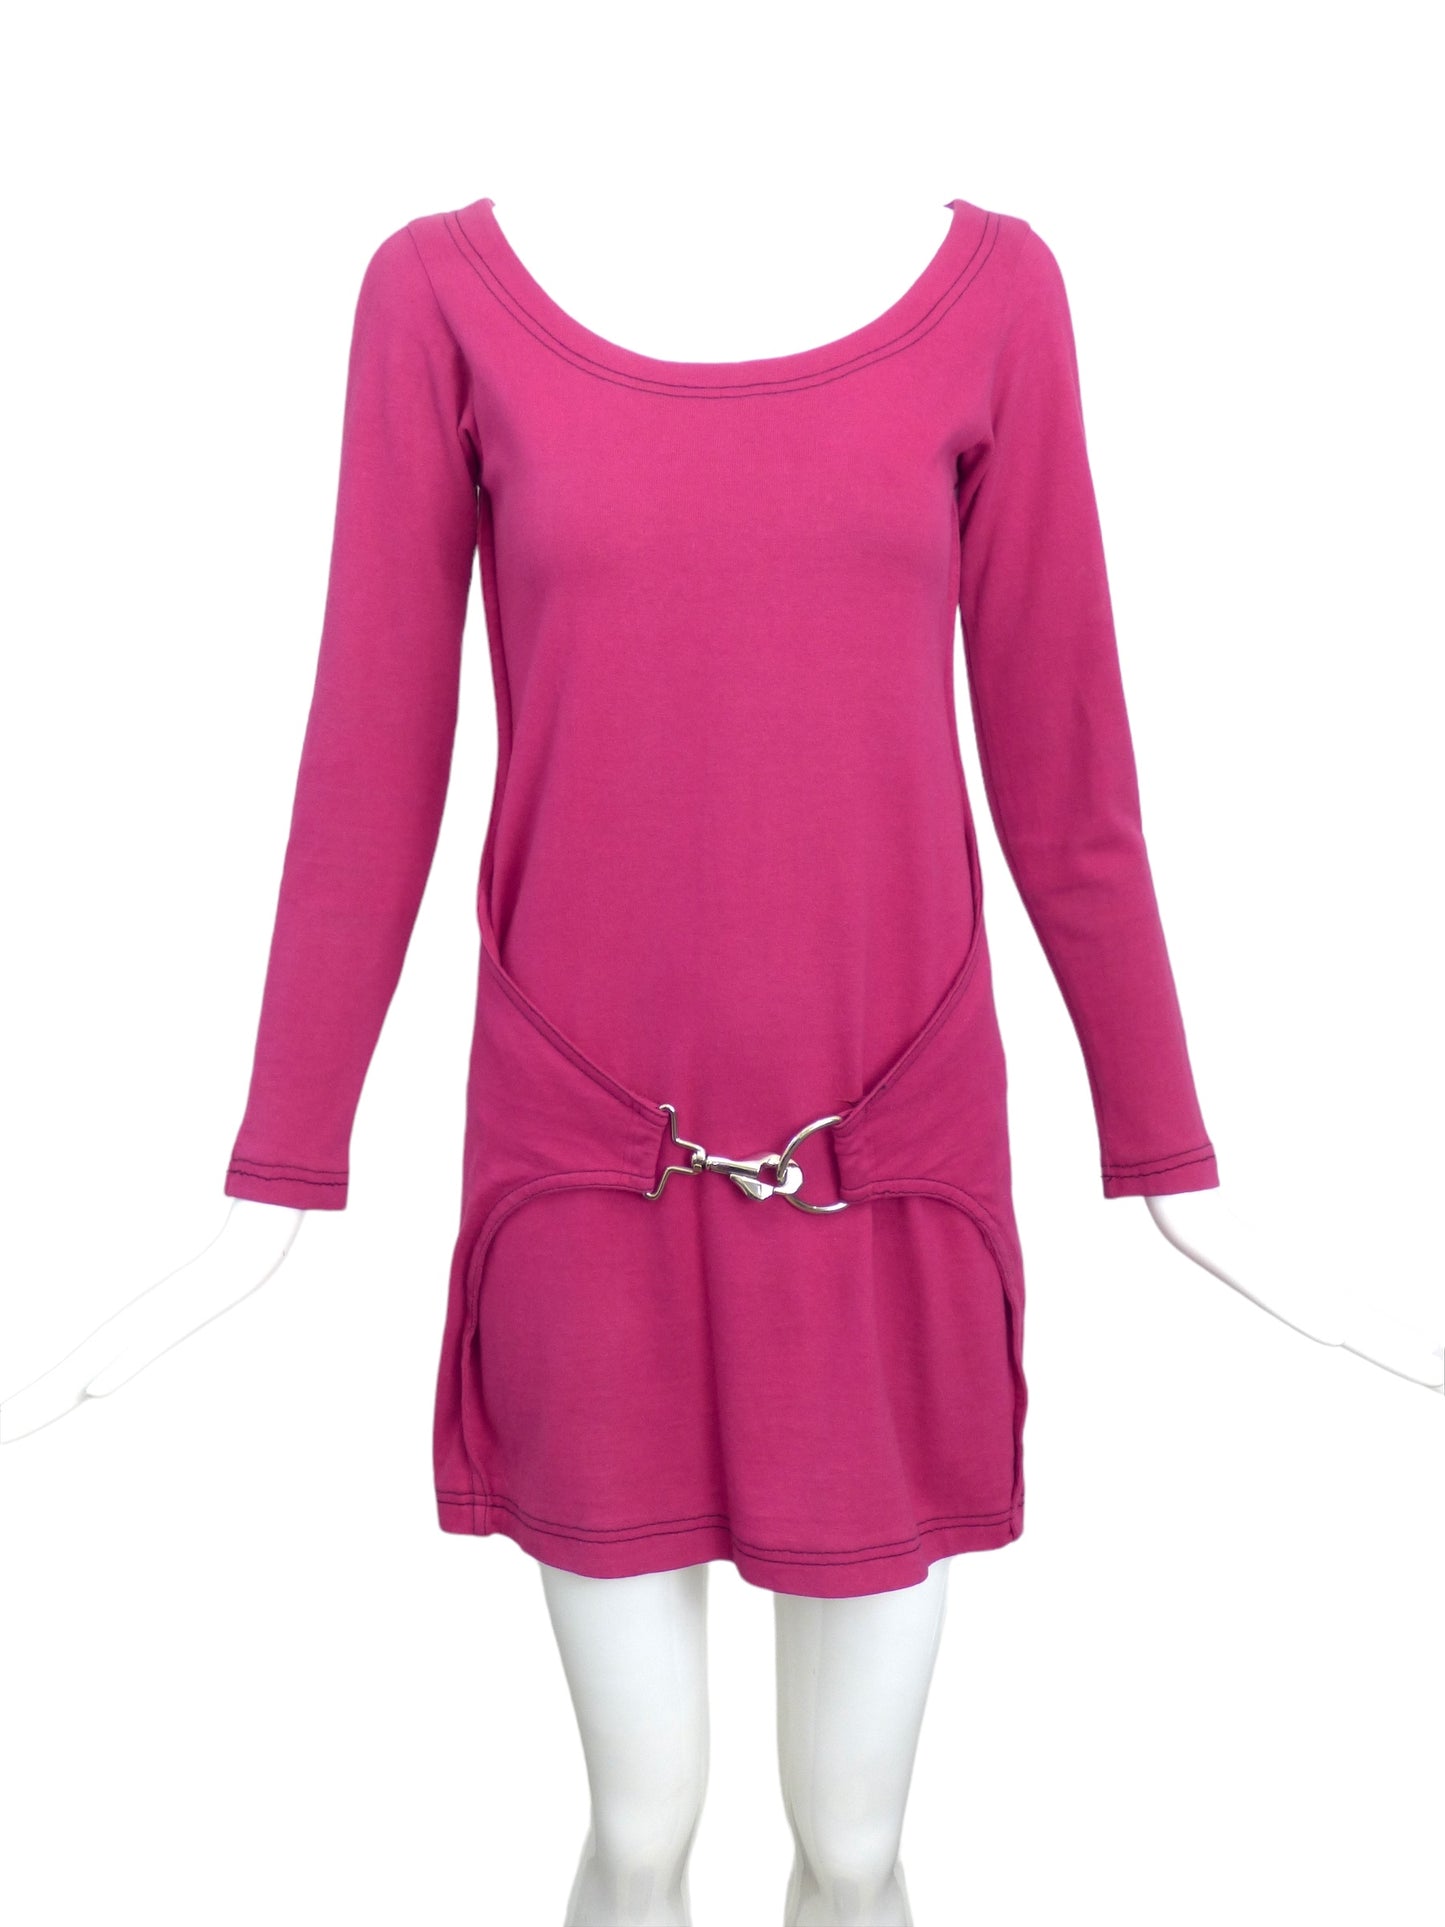 BETSEY JOHNSON-1980s Fuchsia Knit Dress, Size-Small